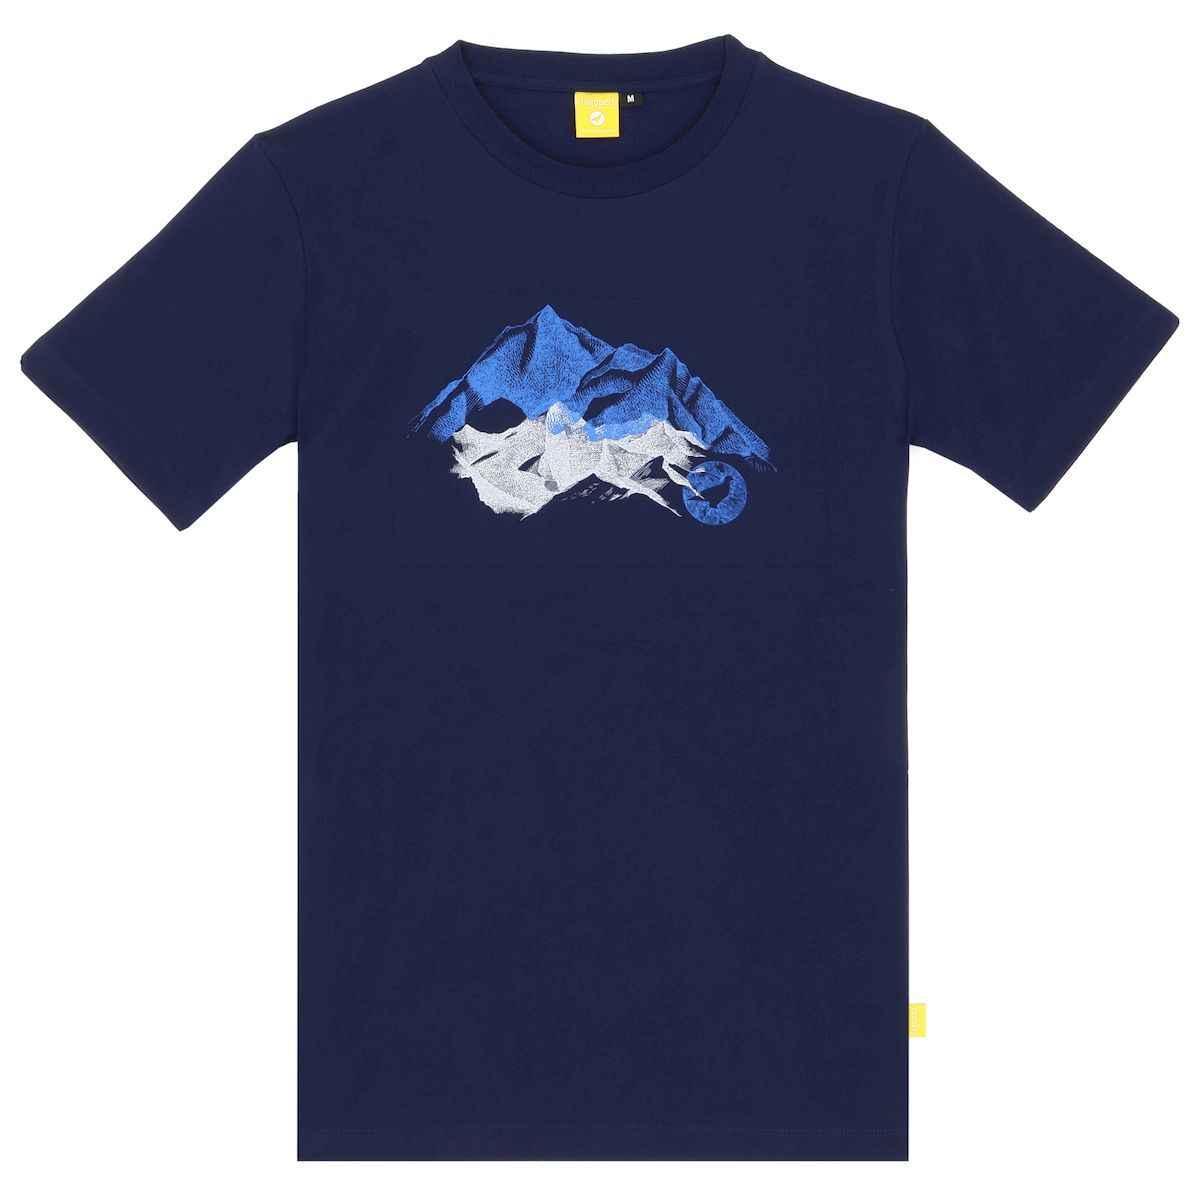 Lagoped Teerec Mount - T-shirt - Men's